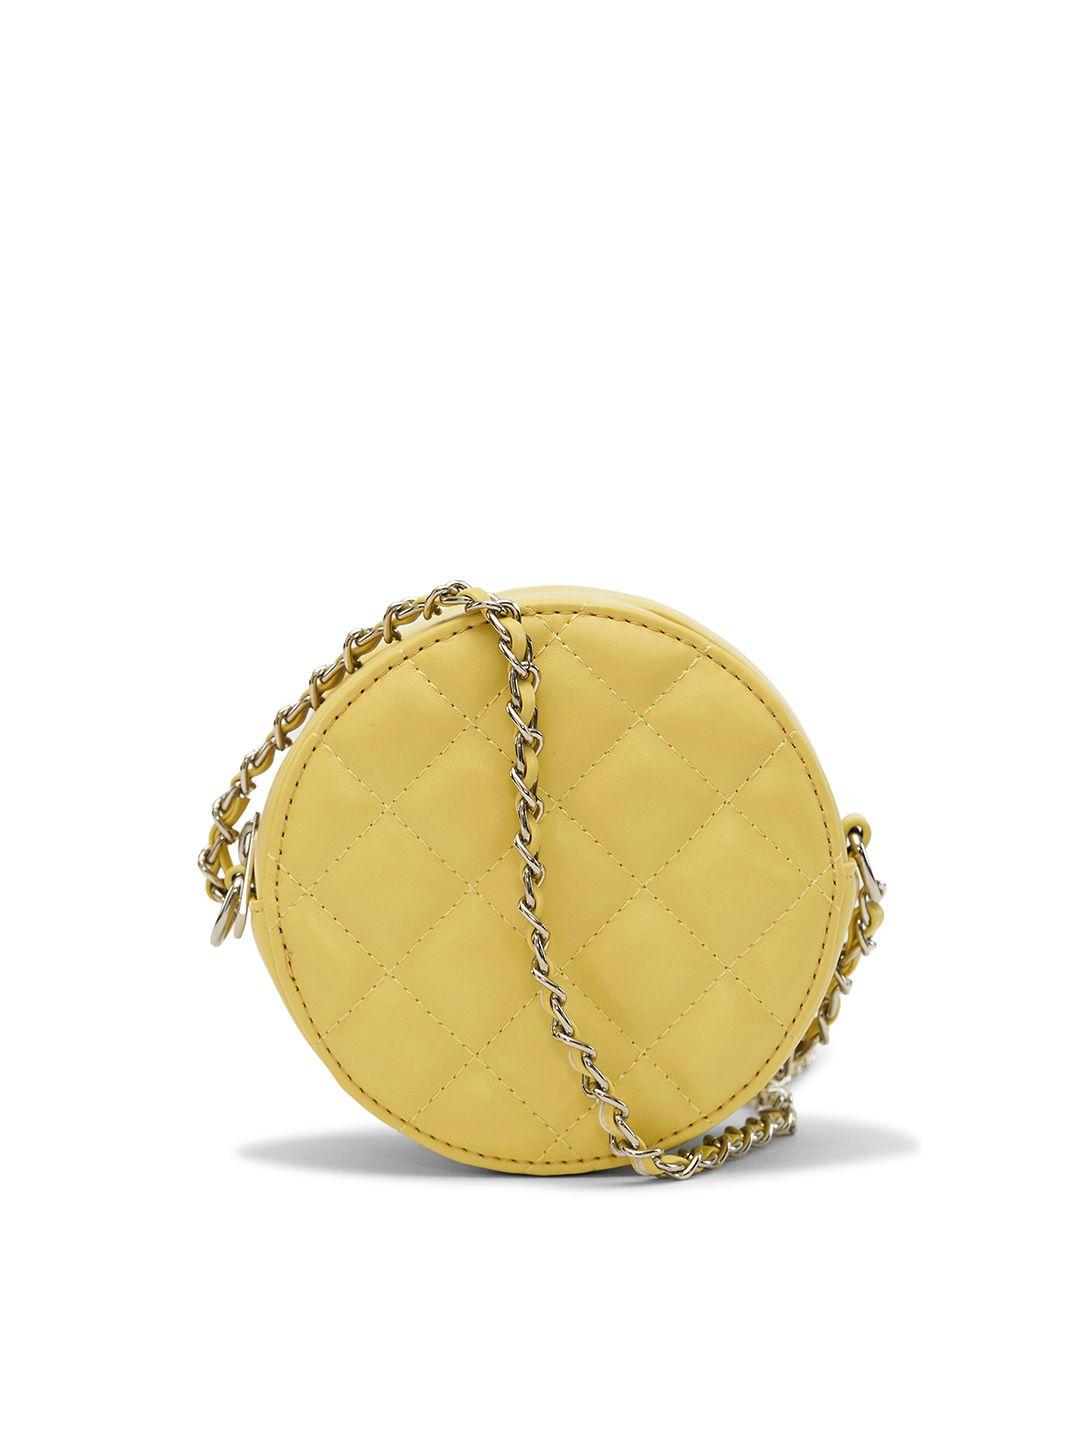 miraggio yellow pu structured handheld bag